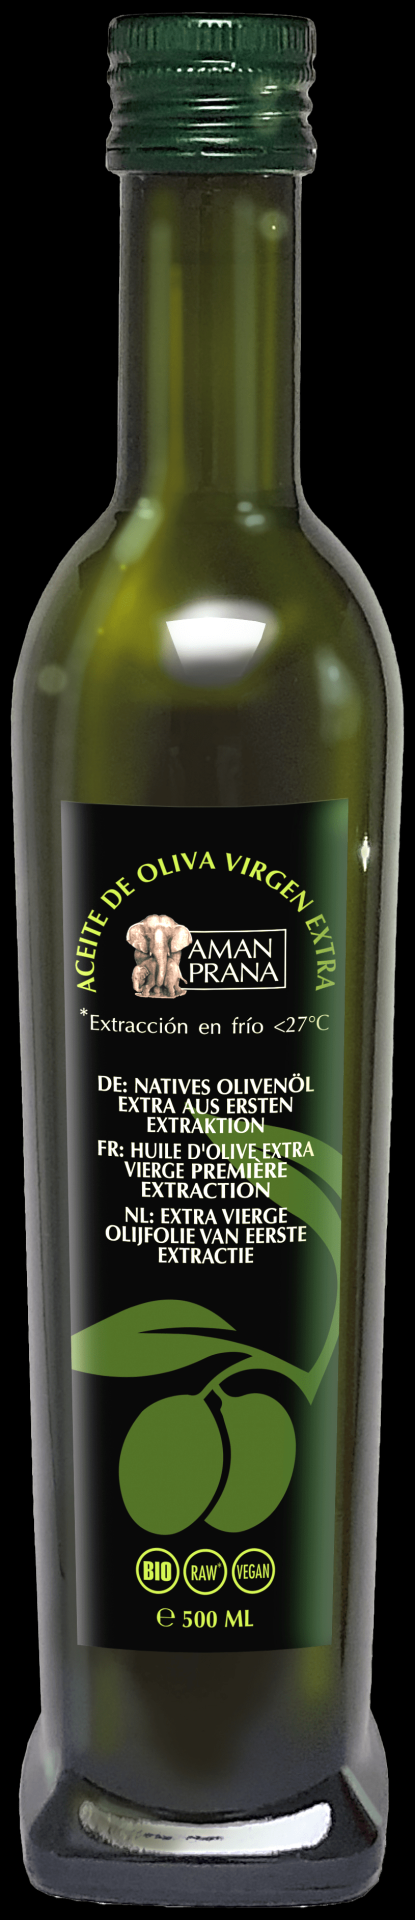 Aman Prana - extra vierge olijfolie